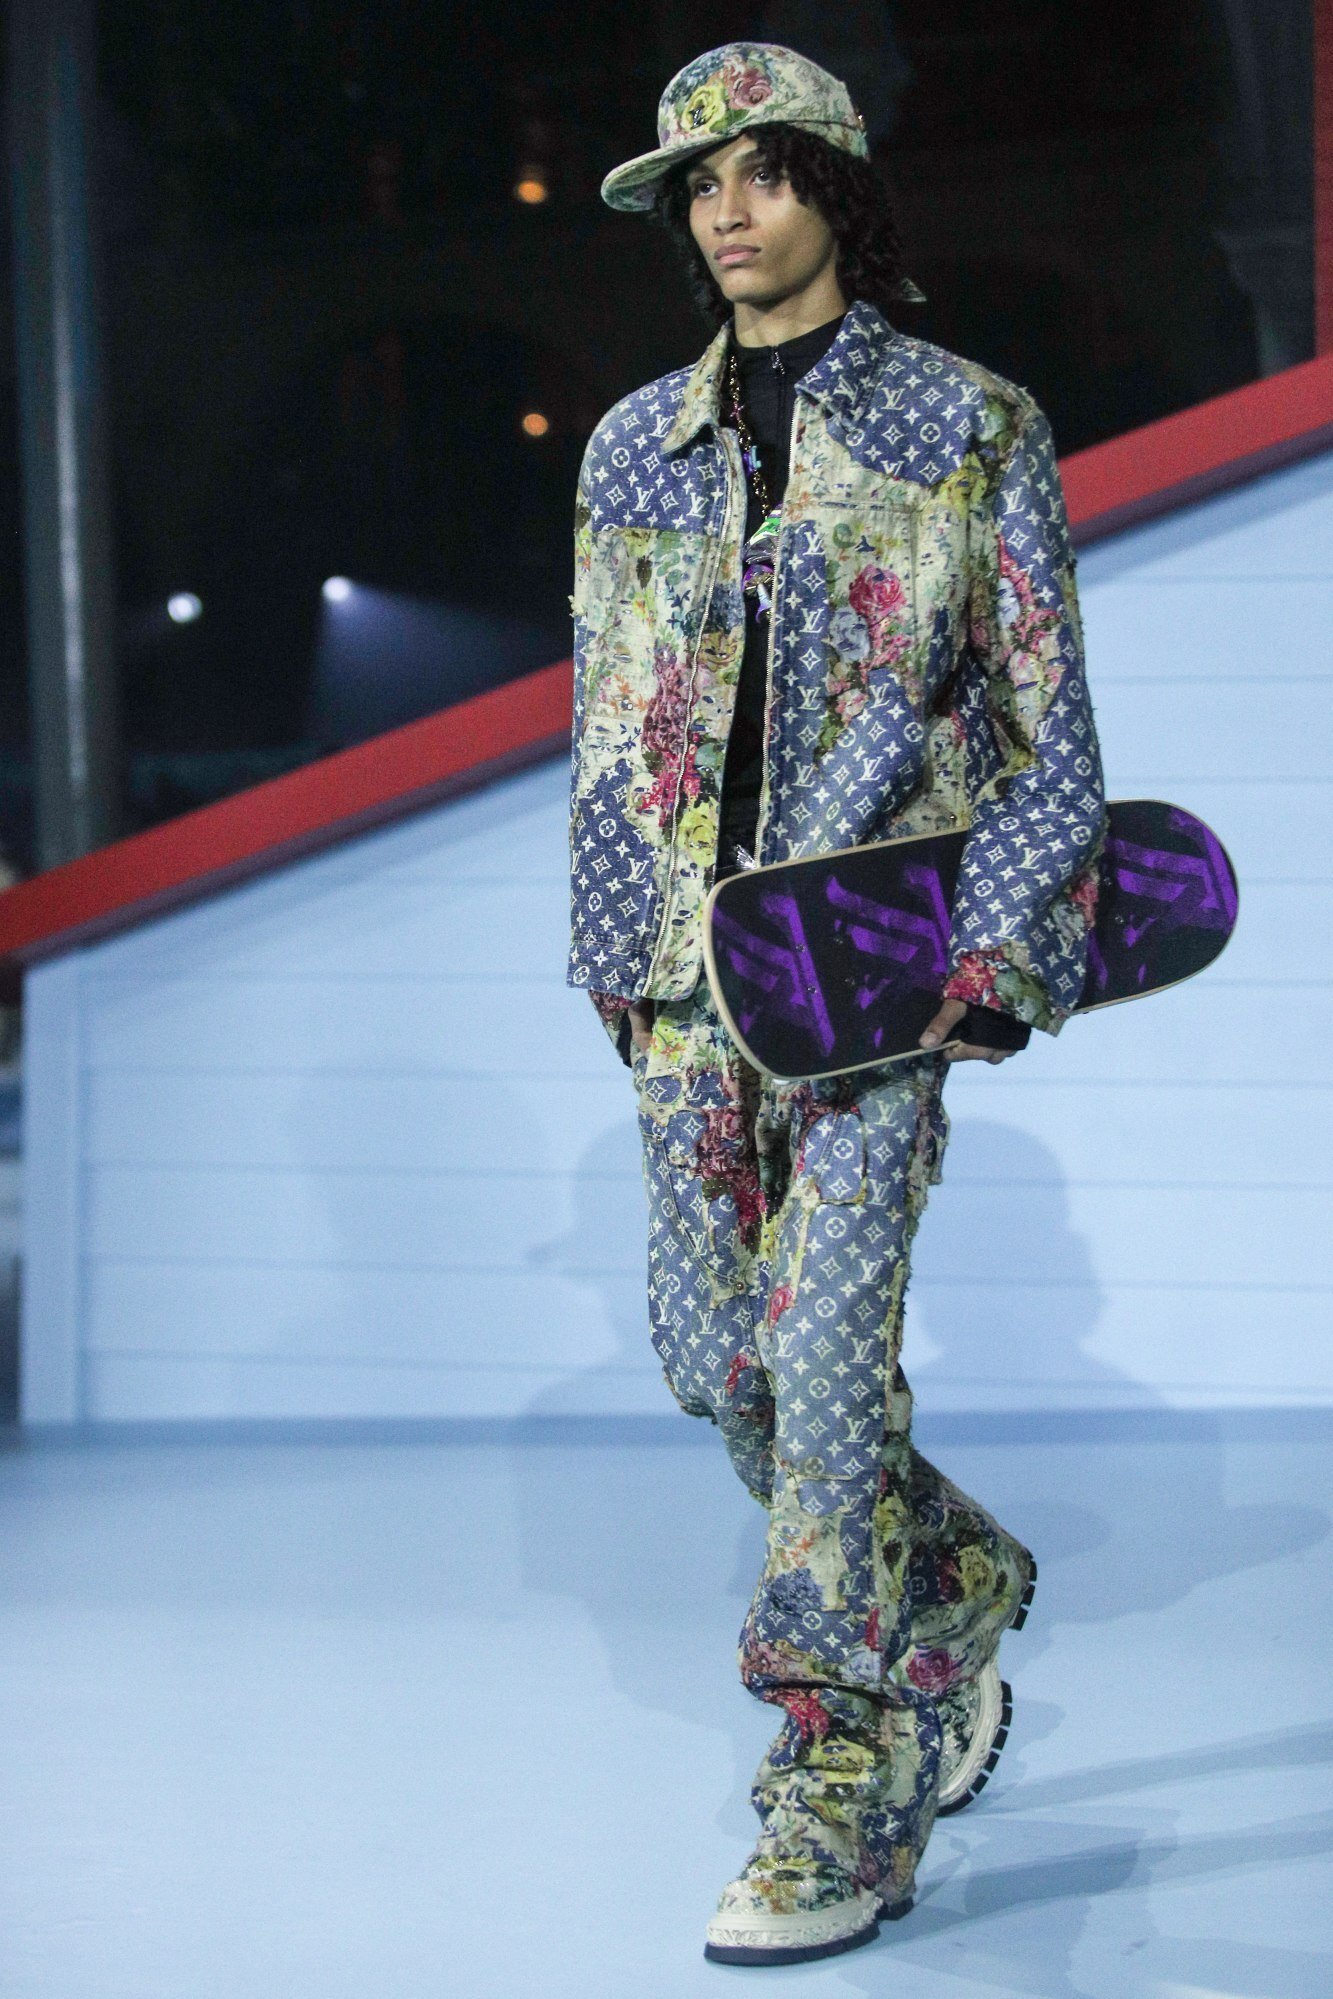 Paris Fashion Week: Louis Vuitton shows Virgil Abloh's last collection